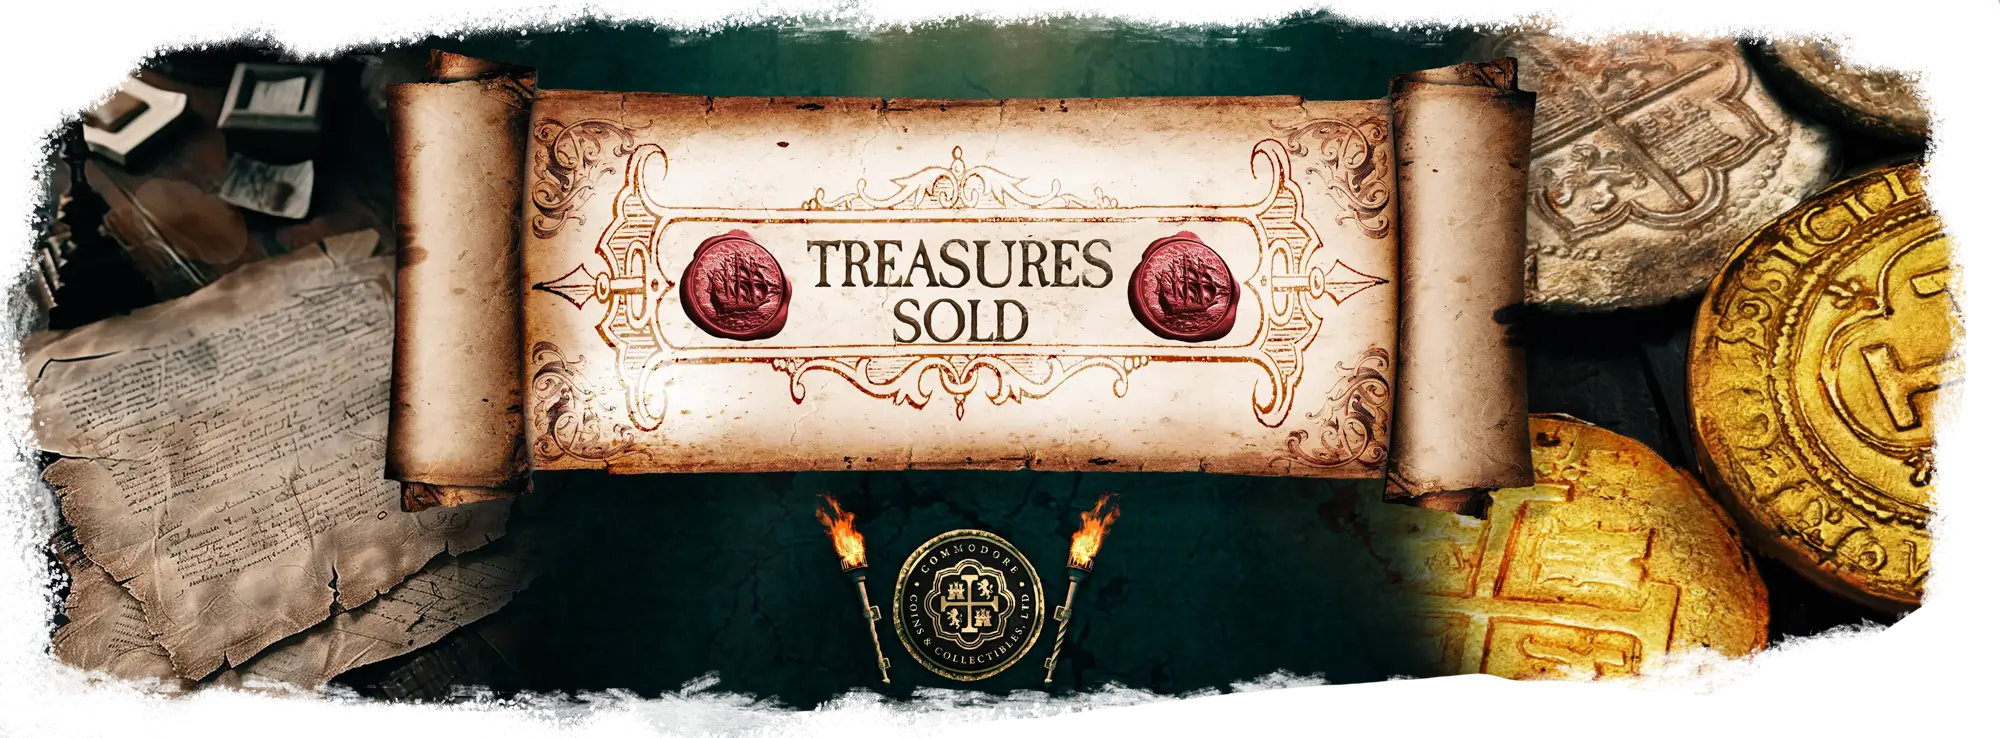 Treasures Sold